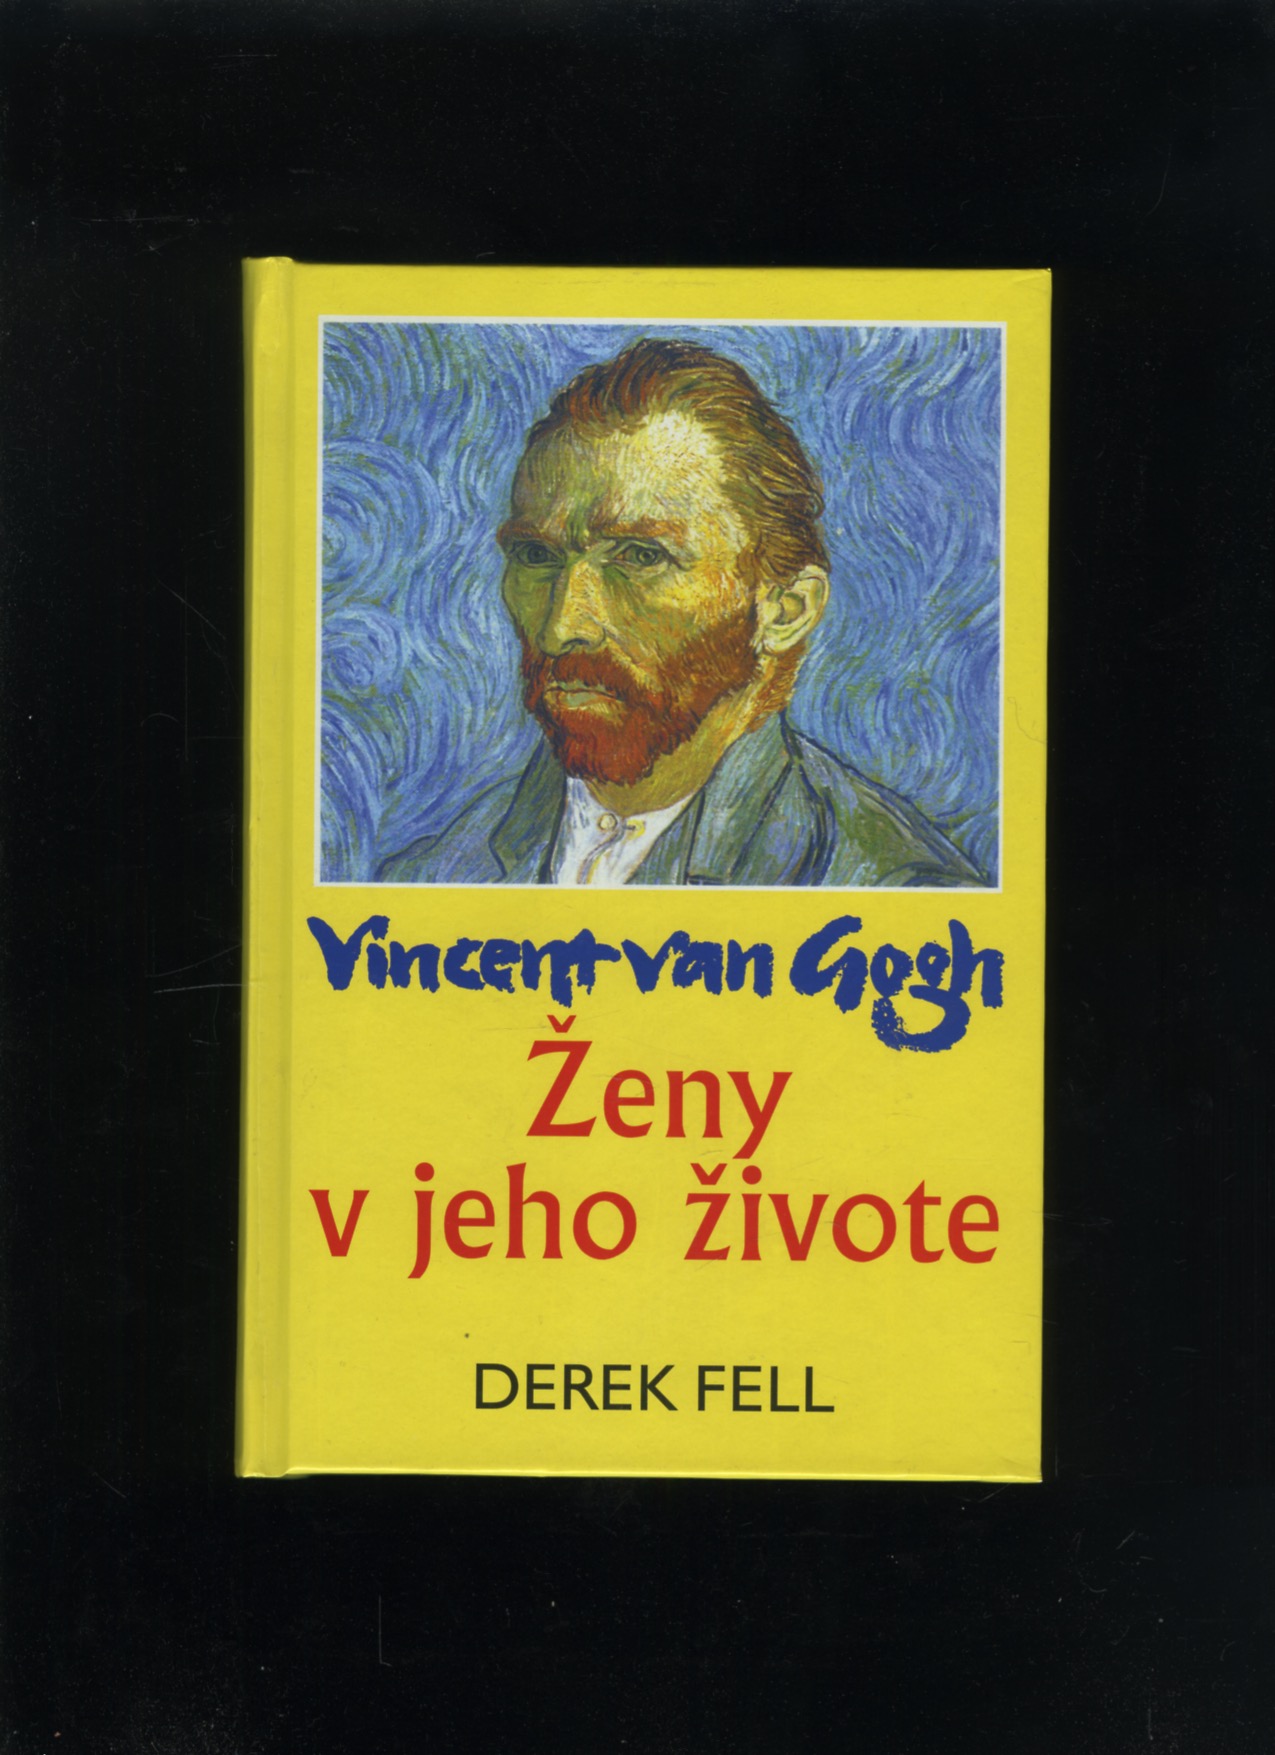 Vincent van Gogh - Ženy v jeho živote (Derek Fell)